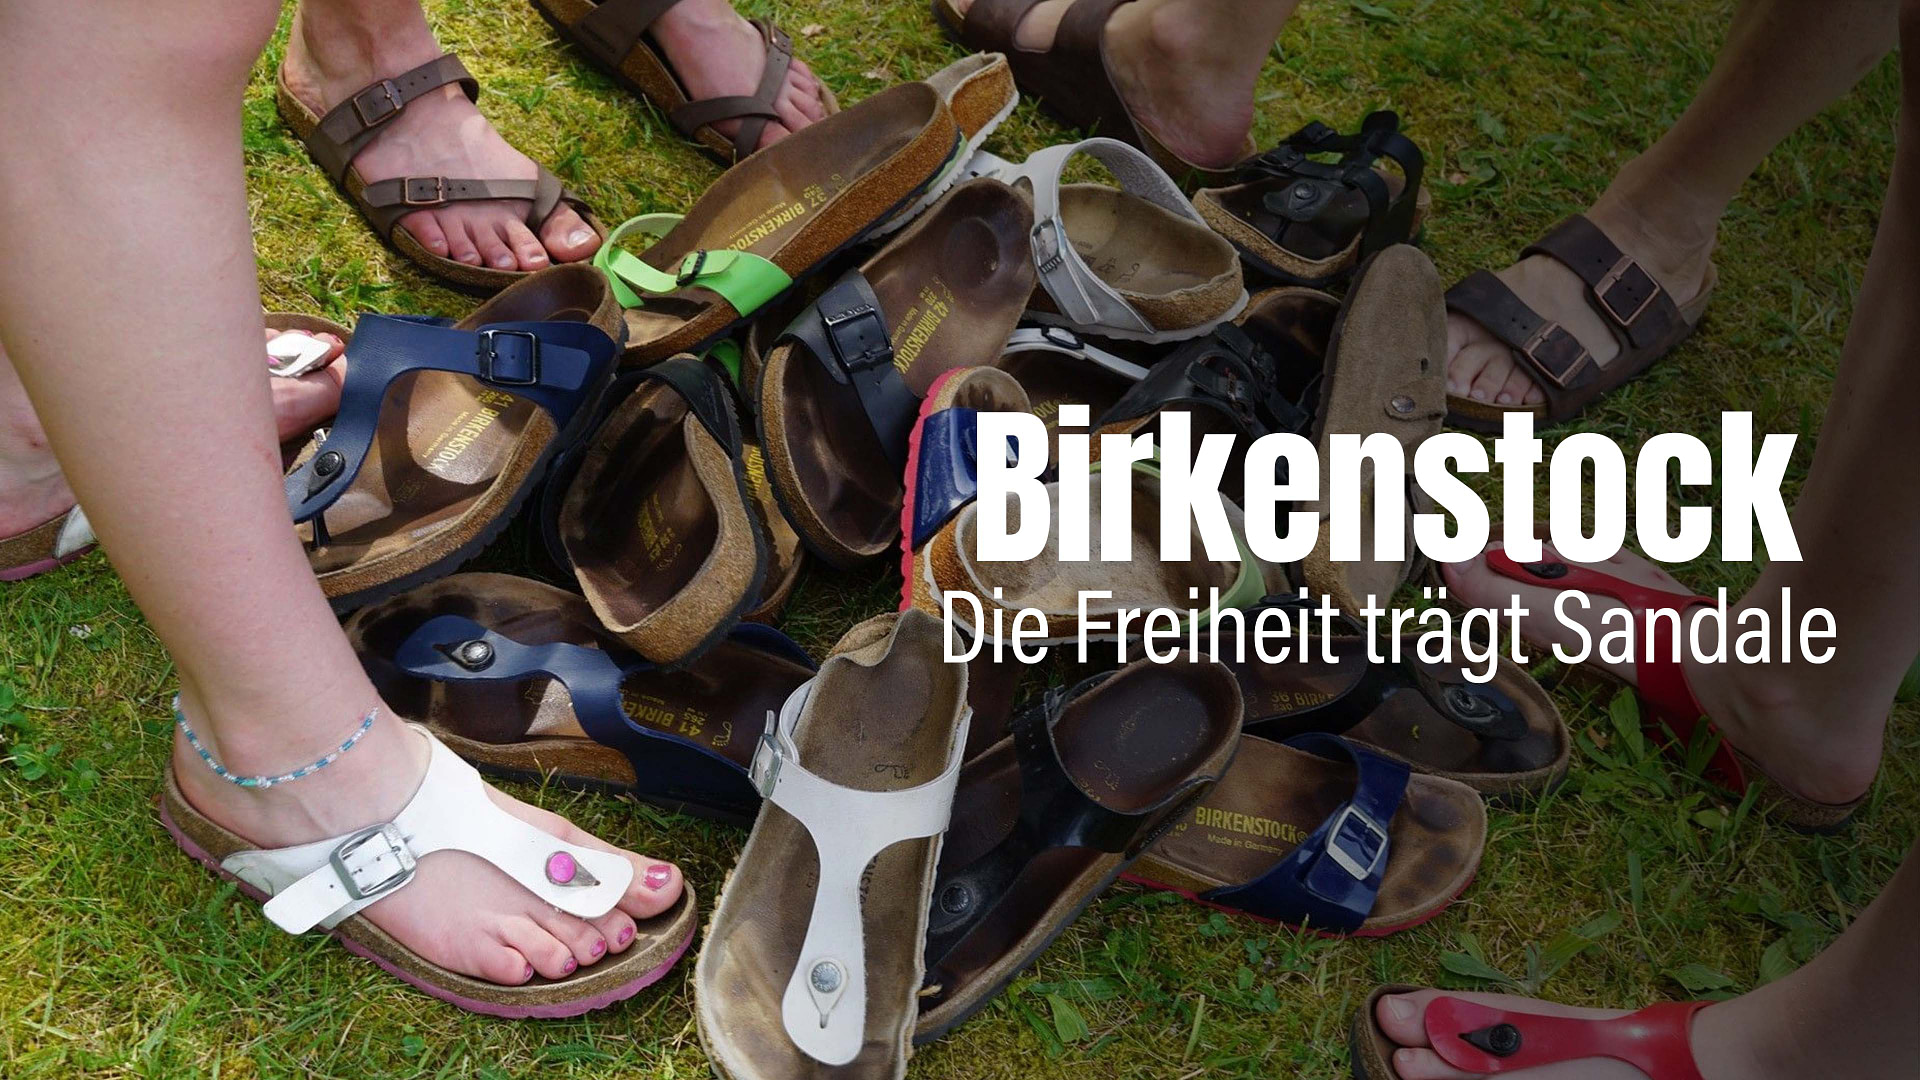 Birkenstock - Die Freiheit trägt Sandale